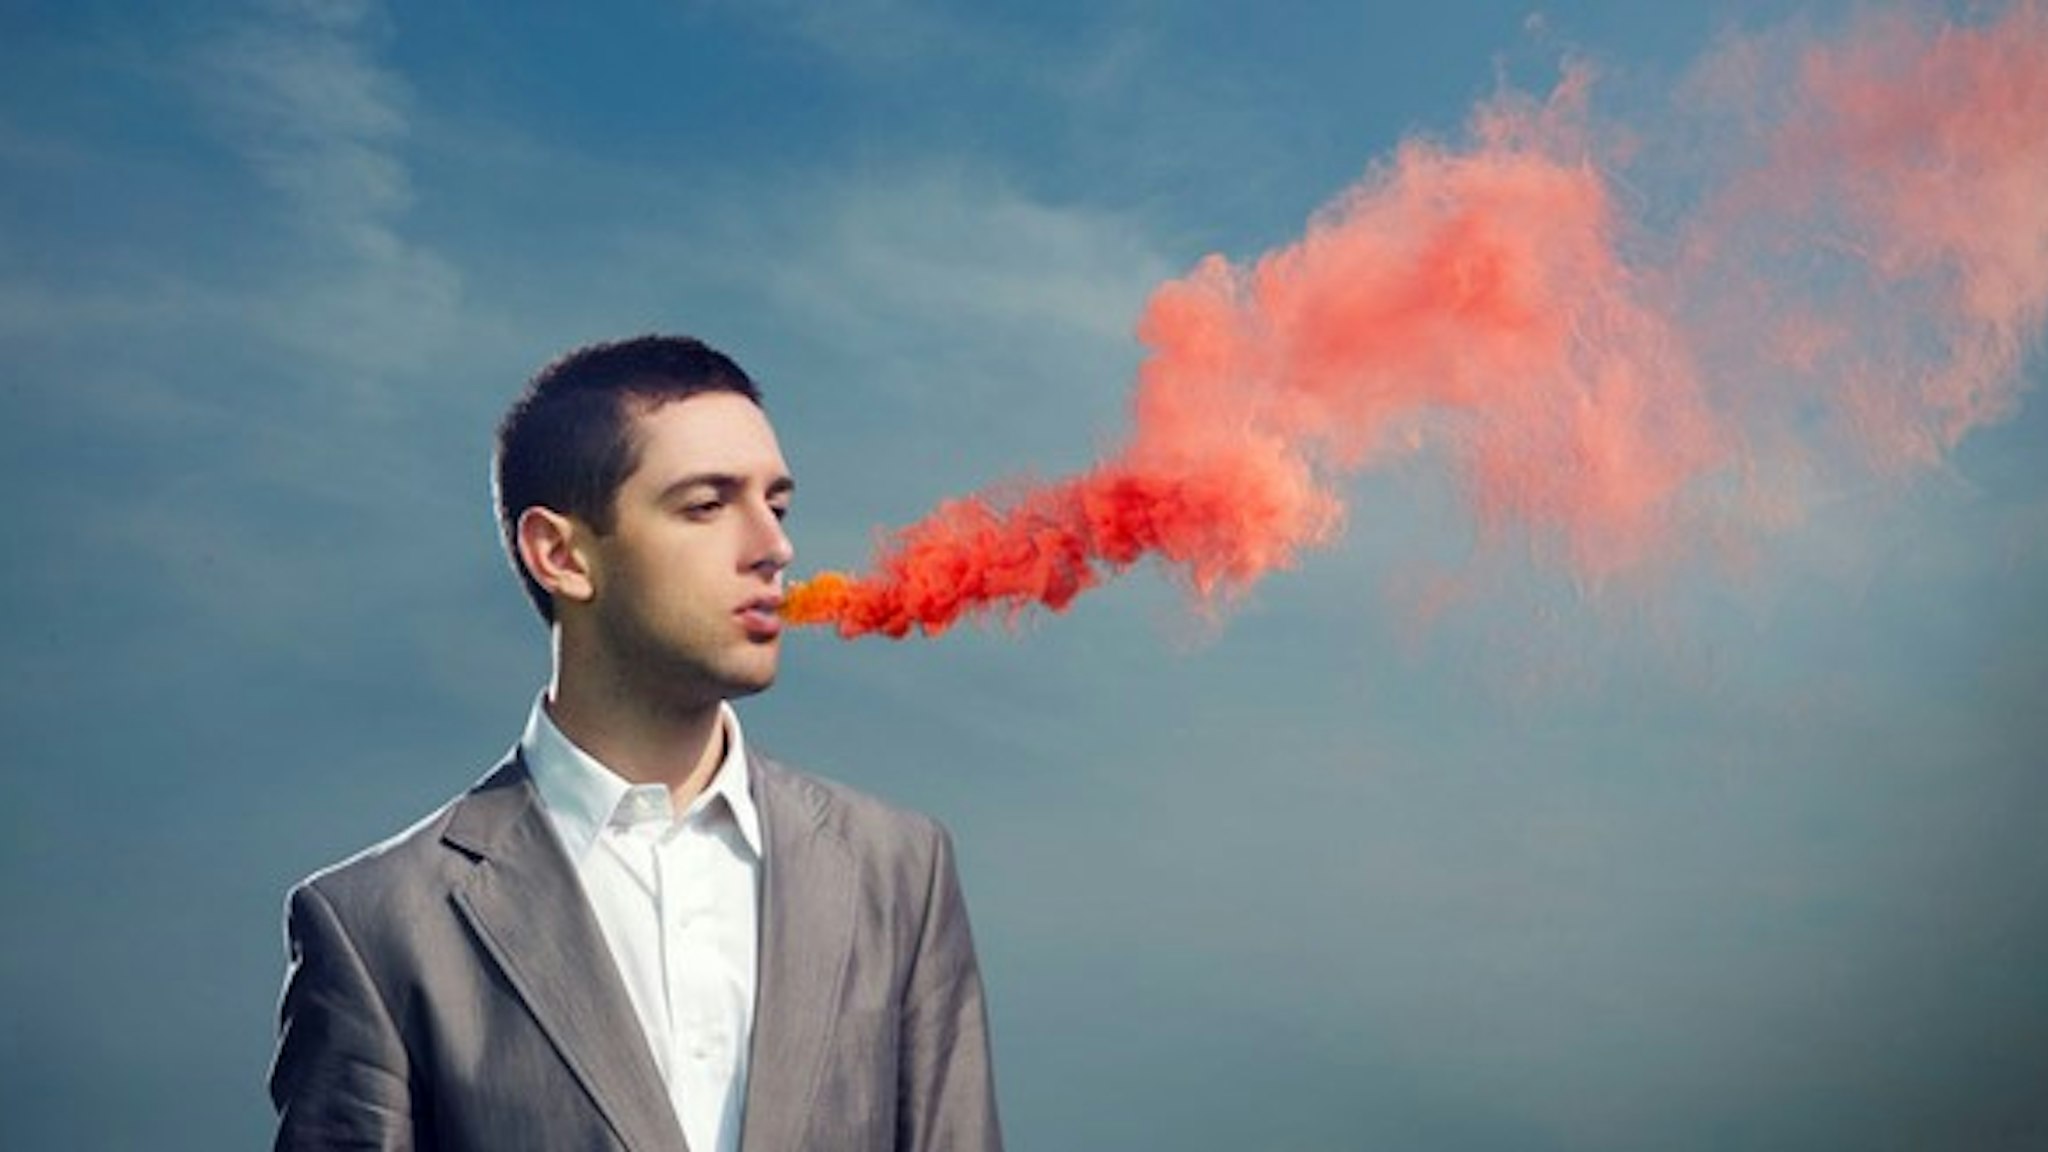 man breathing red smoke